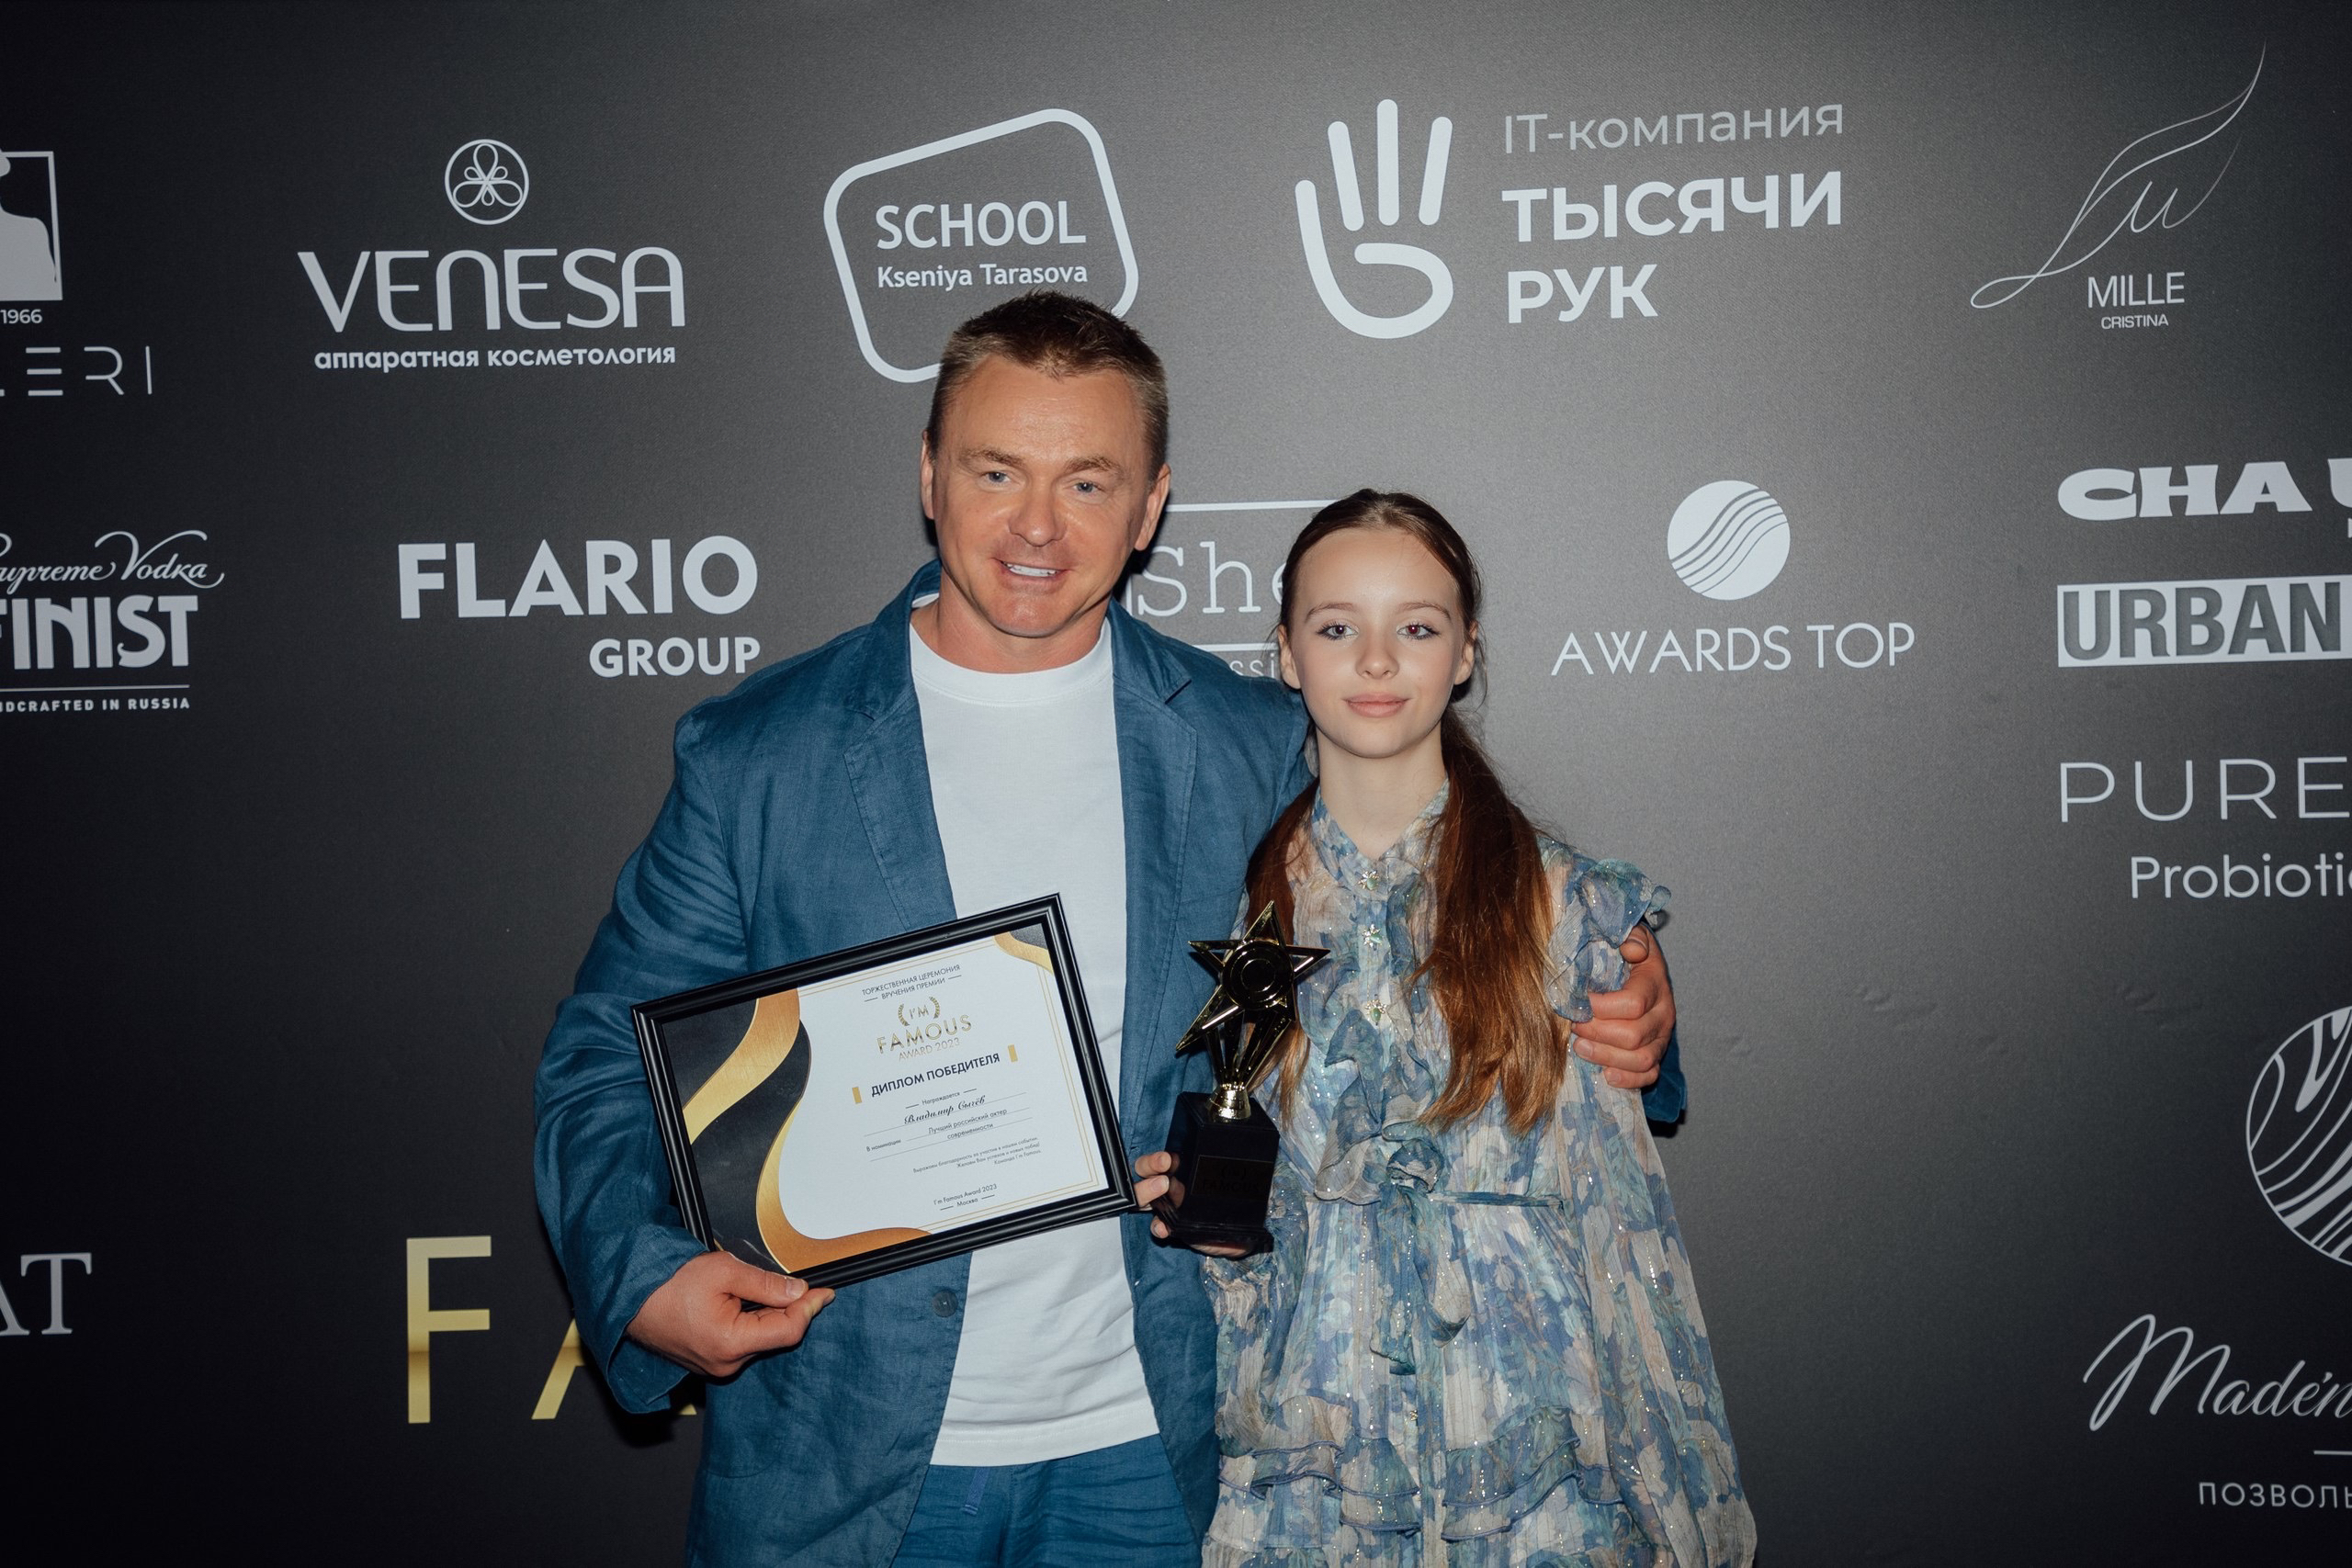 фото: Vl-ая юбилейная благотворительная премия «I’m Famous 2023» состоялась в Москве